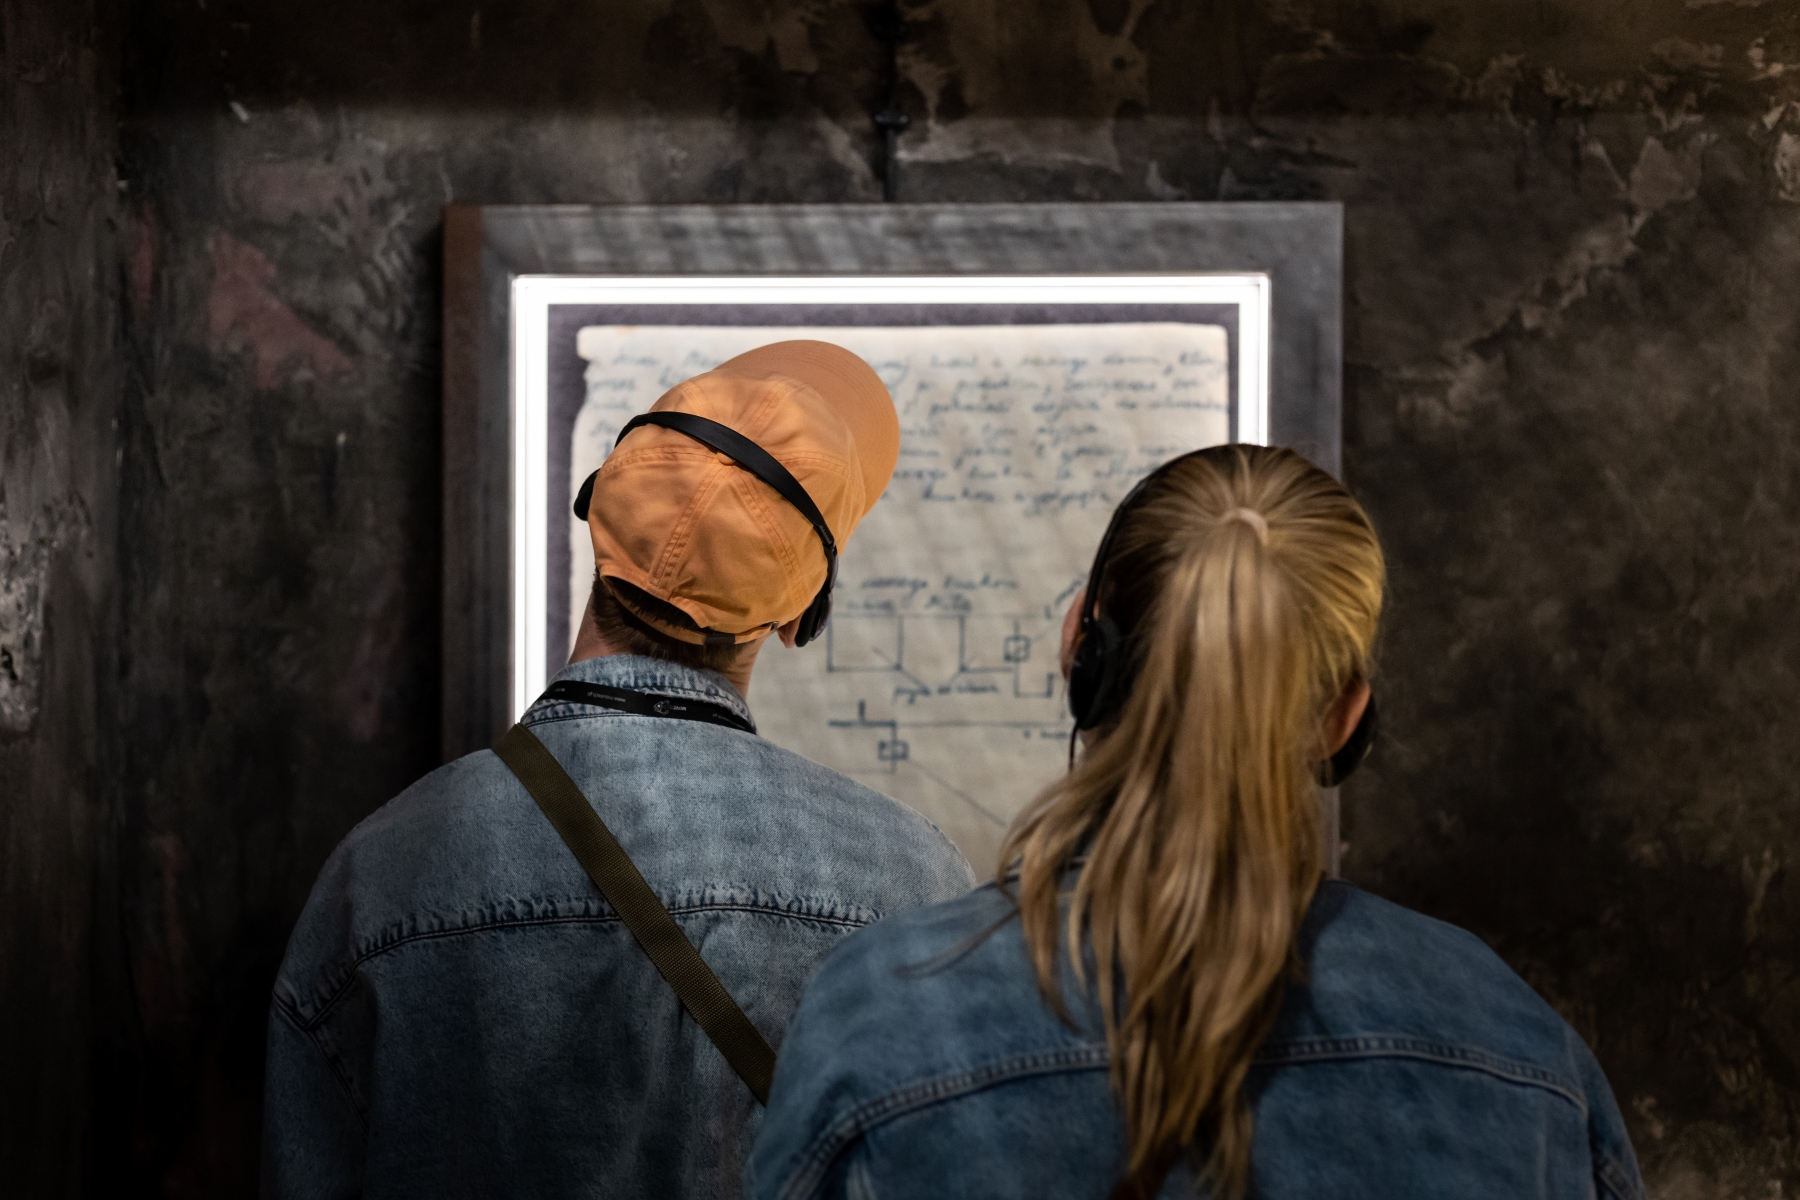 Chłopak i dziewczyna czytają fragment dziennika na wystawie "Wokół nas morze ognia". Stoją tyłem, ich twarze zwrócone w stronę ściany.